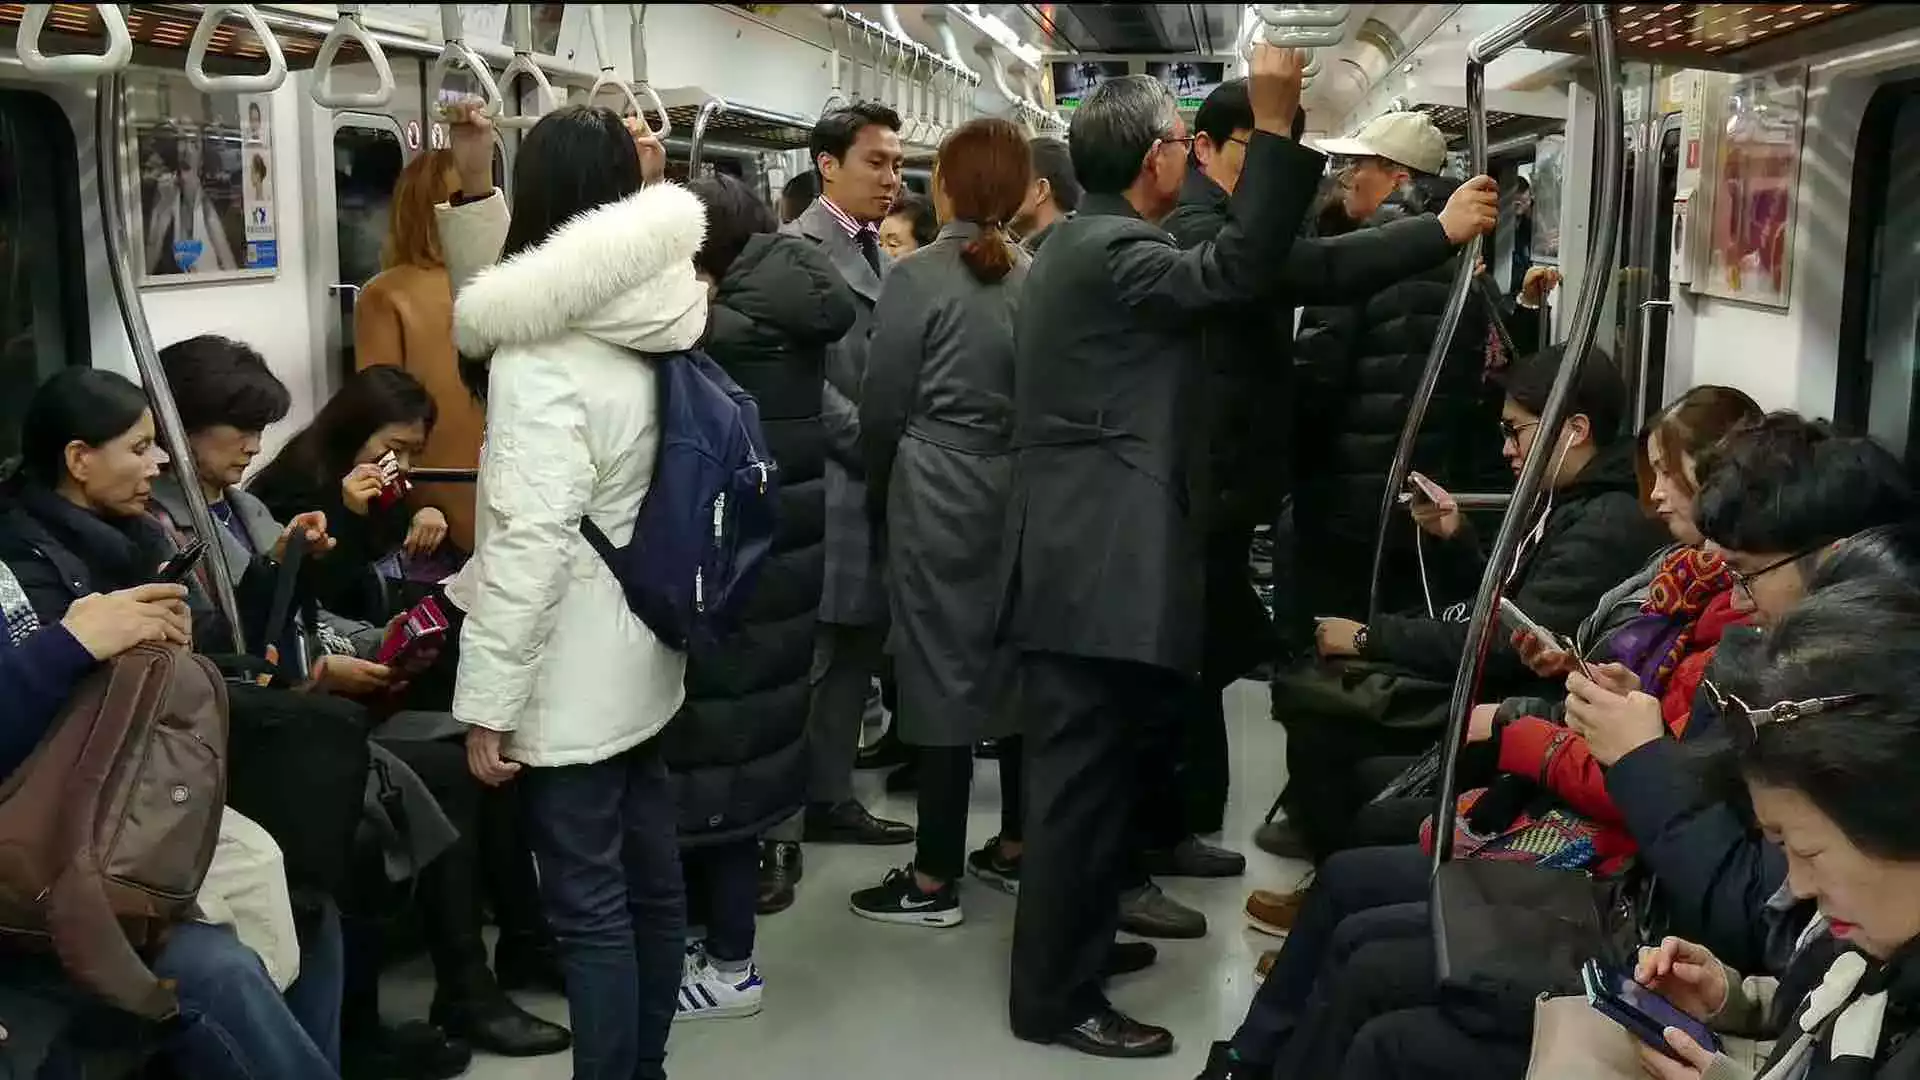 Км в час в метро. Переполненный вагон метро. Толпа в поезде метро. Китайцы в метро. Толпа в вагоне метро.